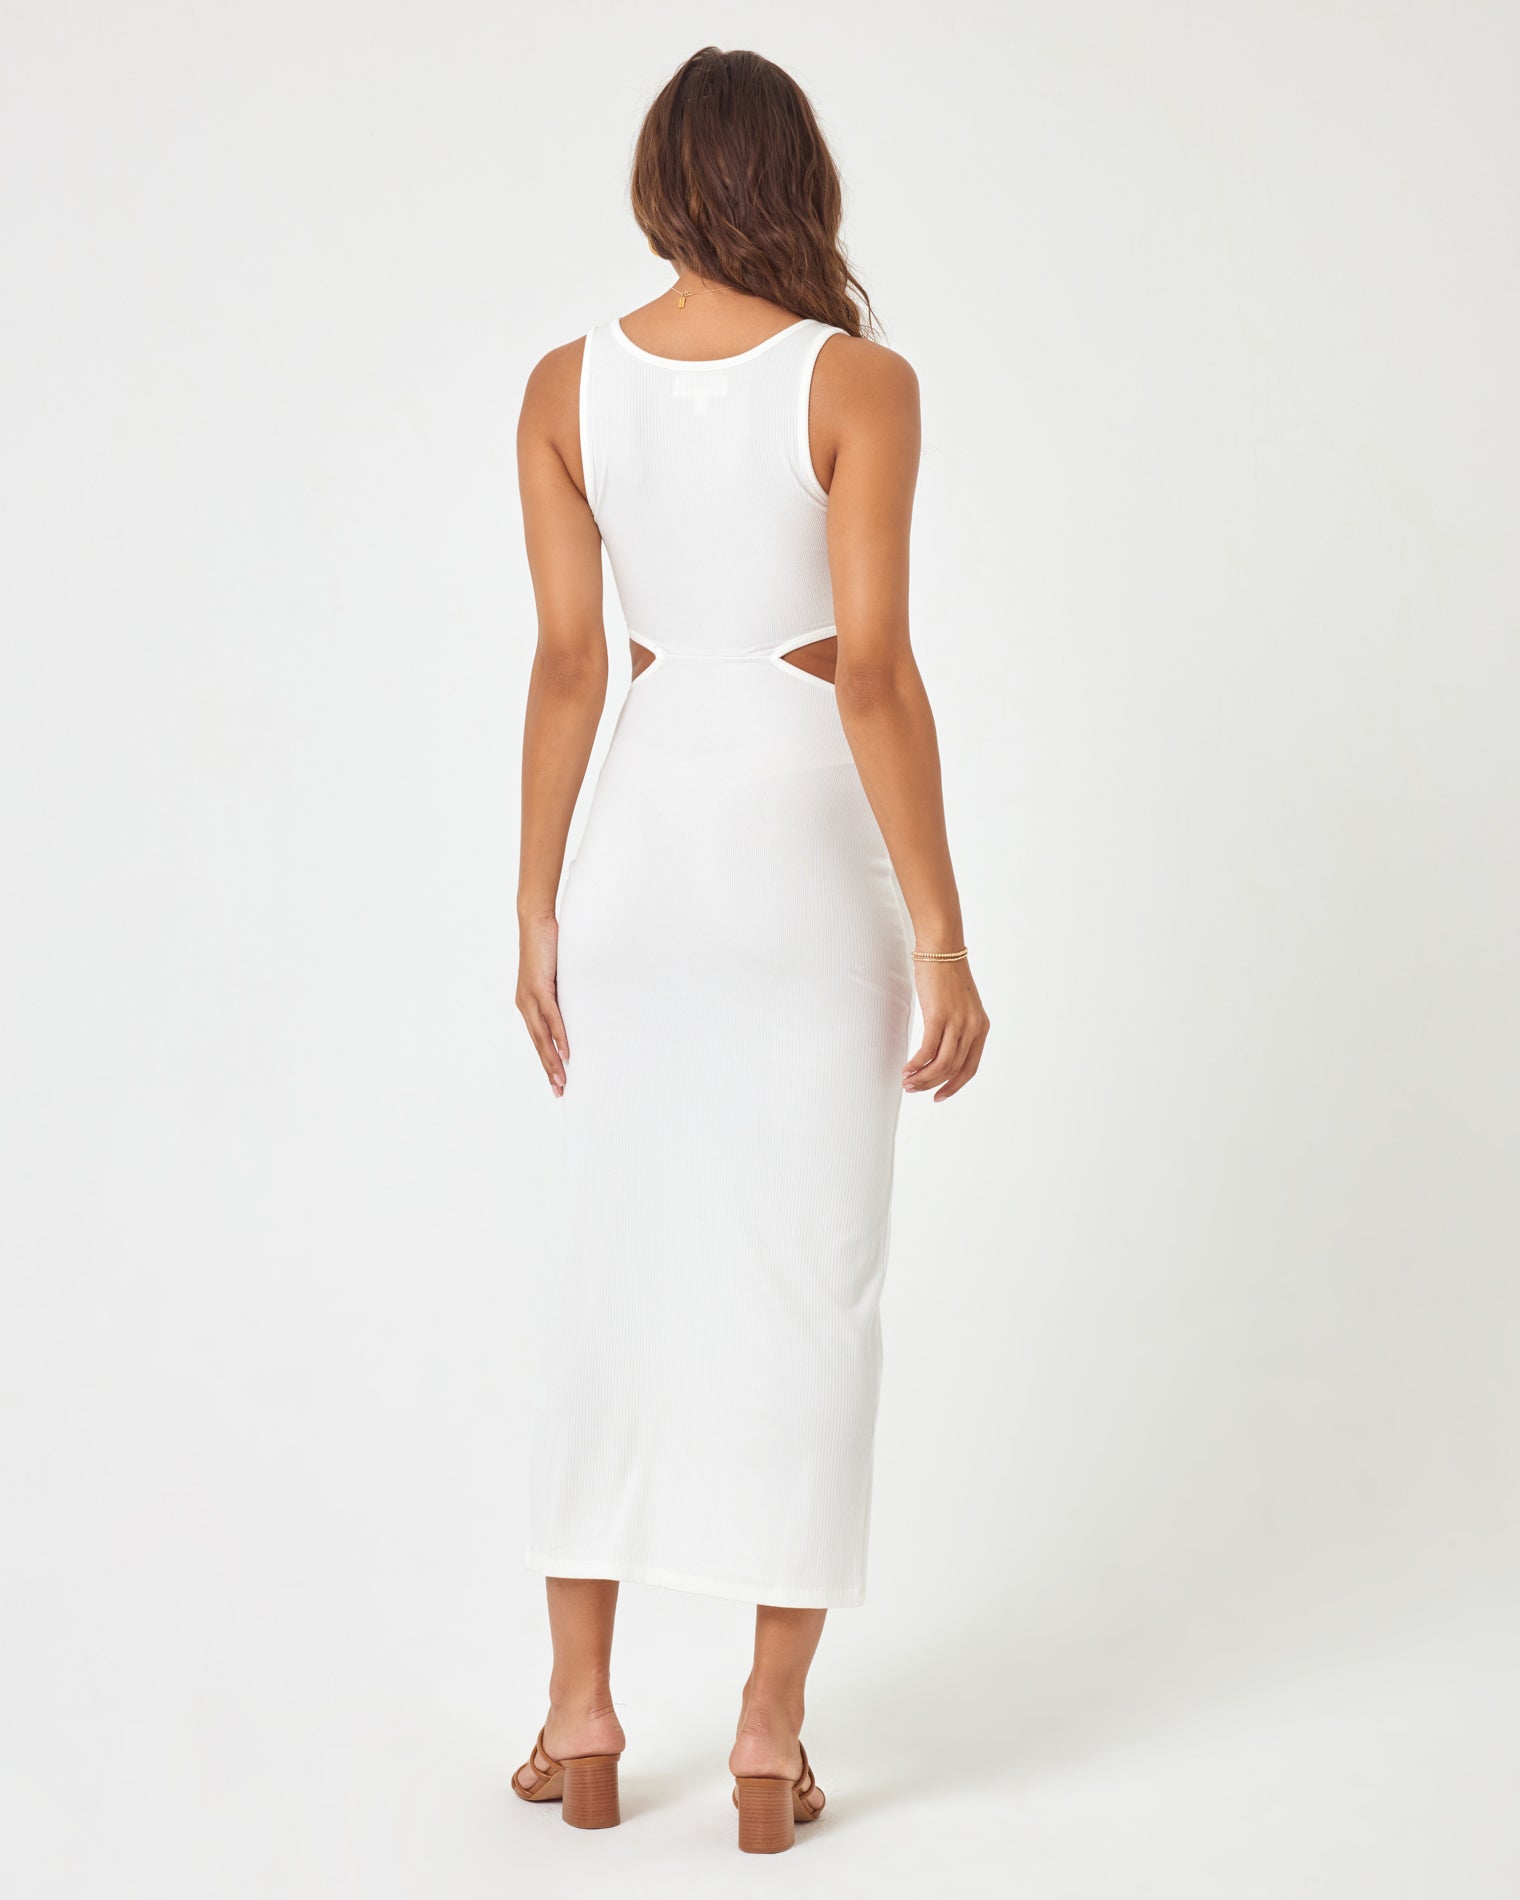 Skyler Dress - Cream Cream | Model: Natalie (size: S)